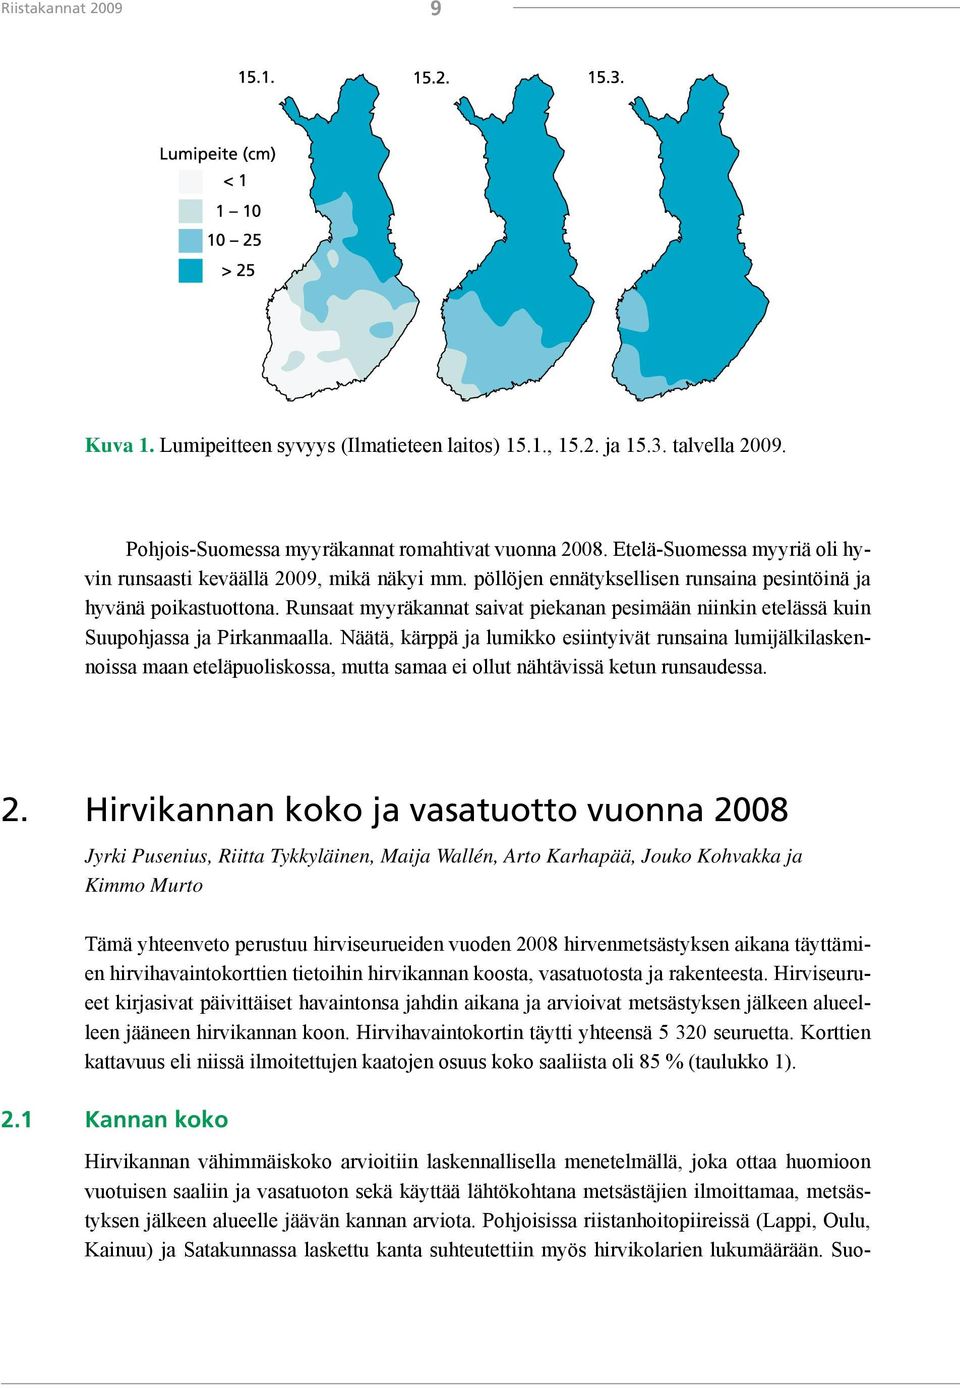 Runsaat myyräkannat saivat piekanan pesimään niinkin etelässä kuin Suupohjassa ja Pirkanmaalla.